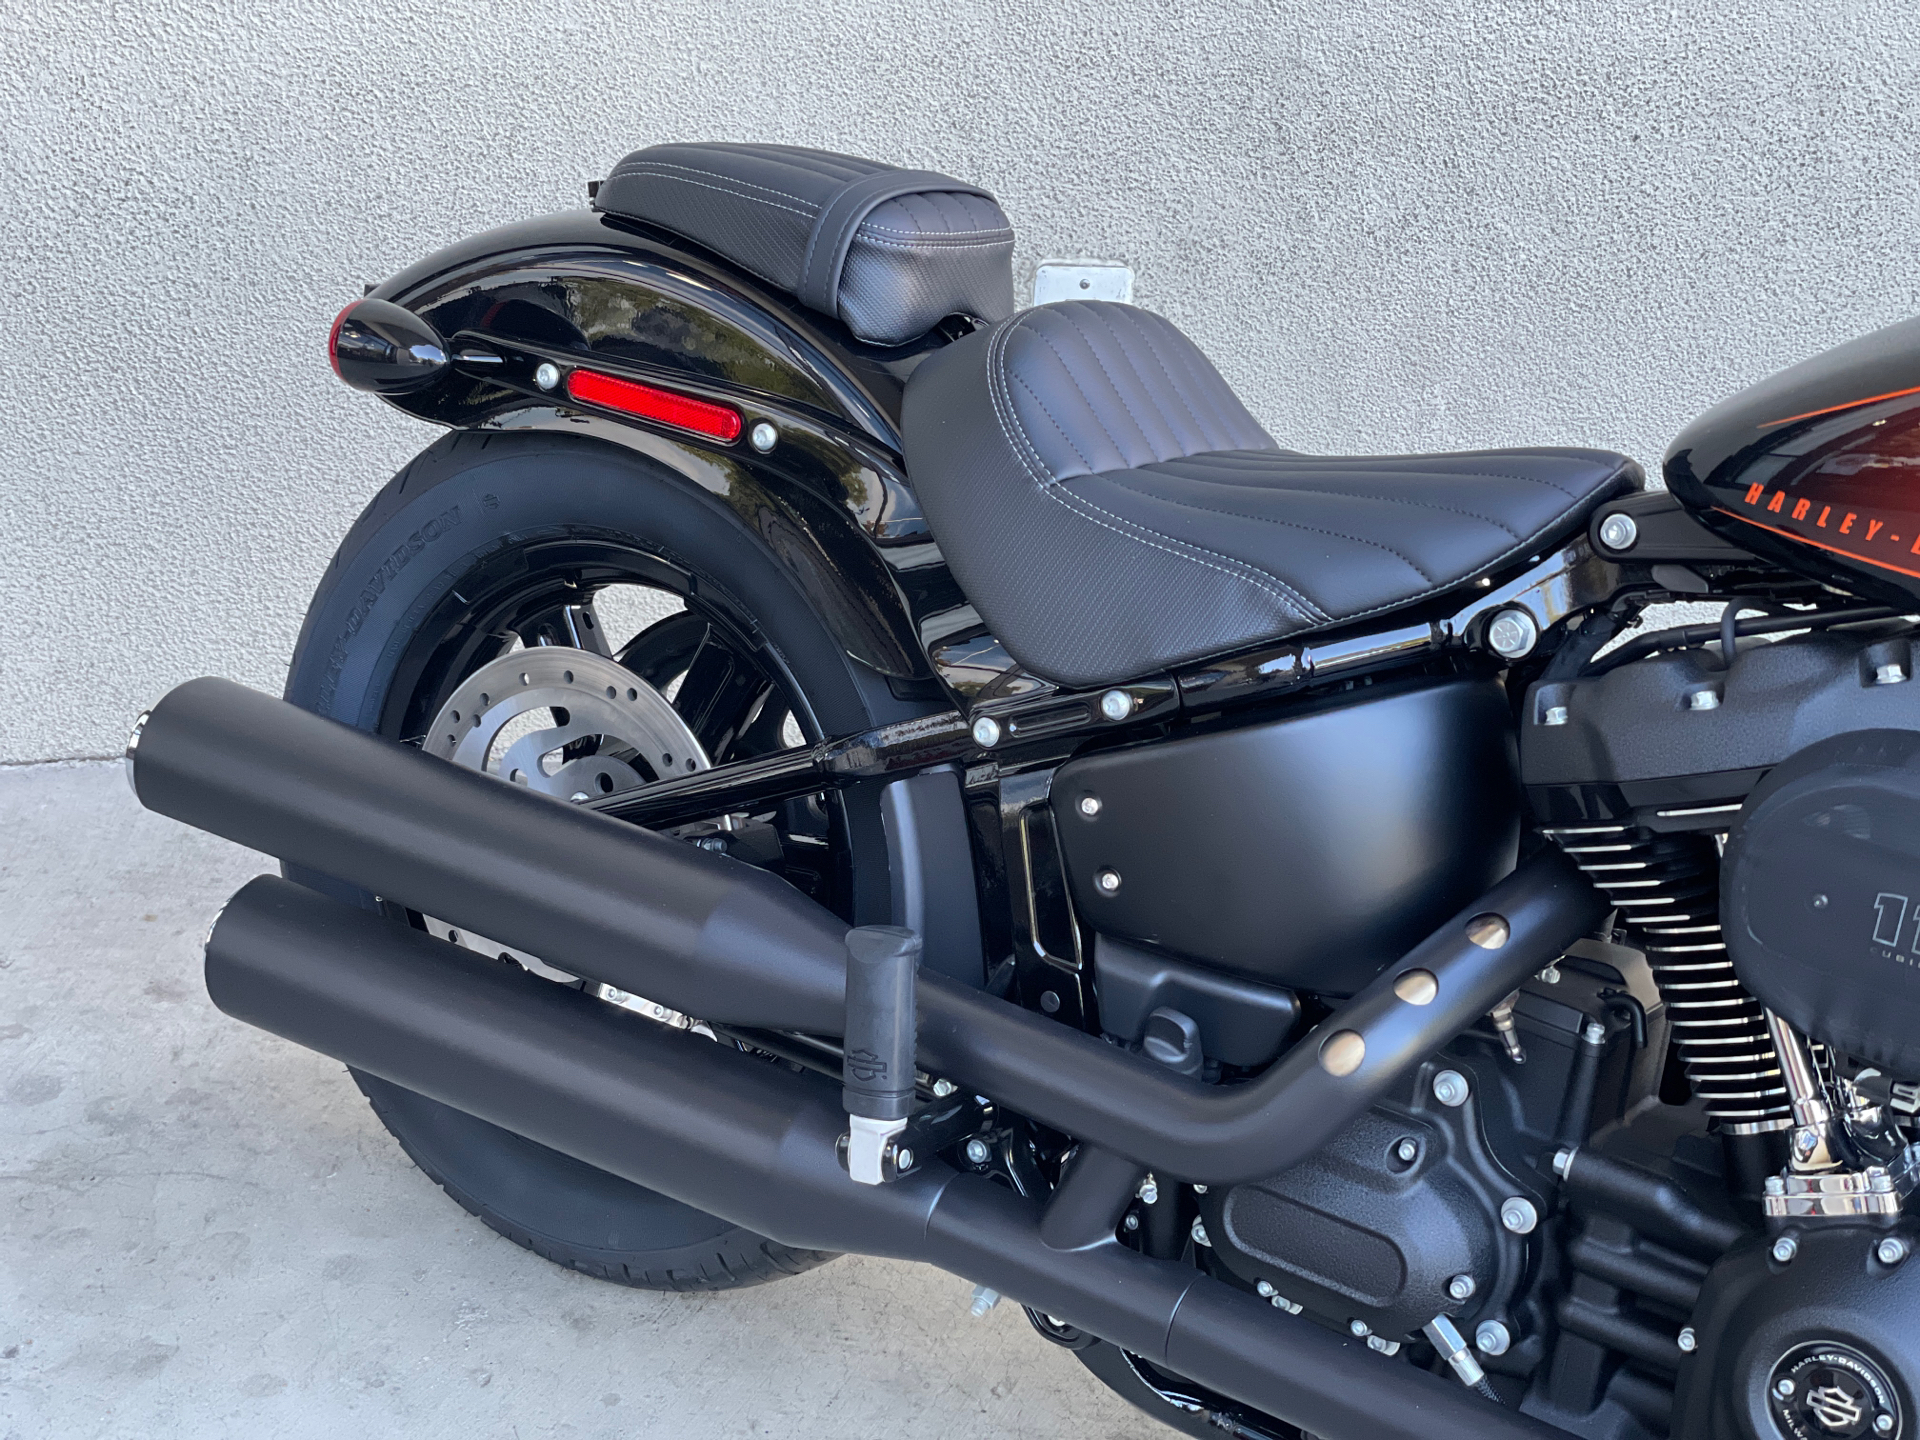 2022 Harley-Davidson Street Bob® 114 in San Jose, California - Photo 5